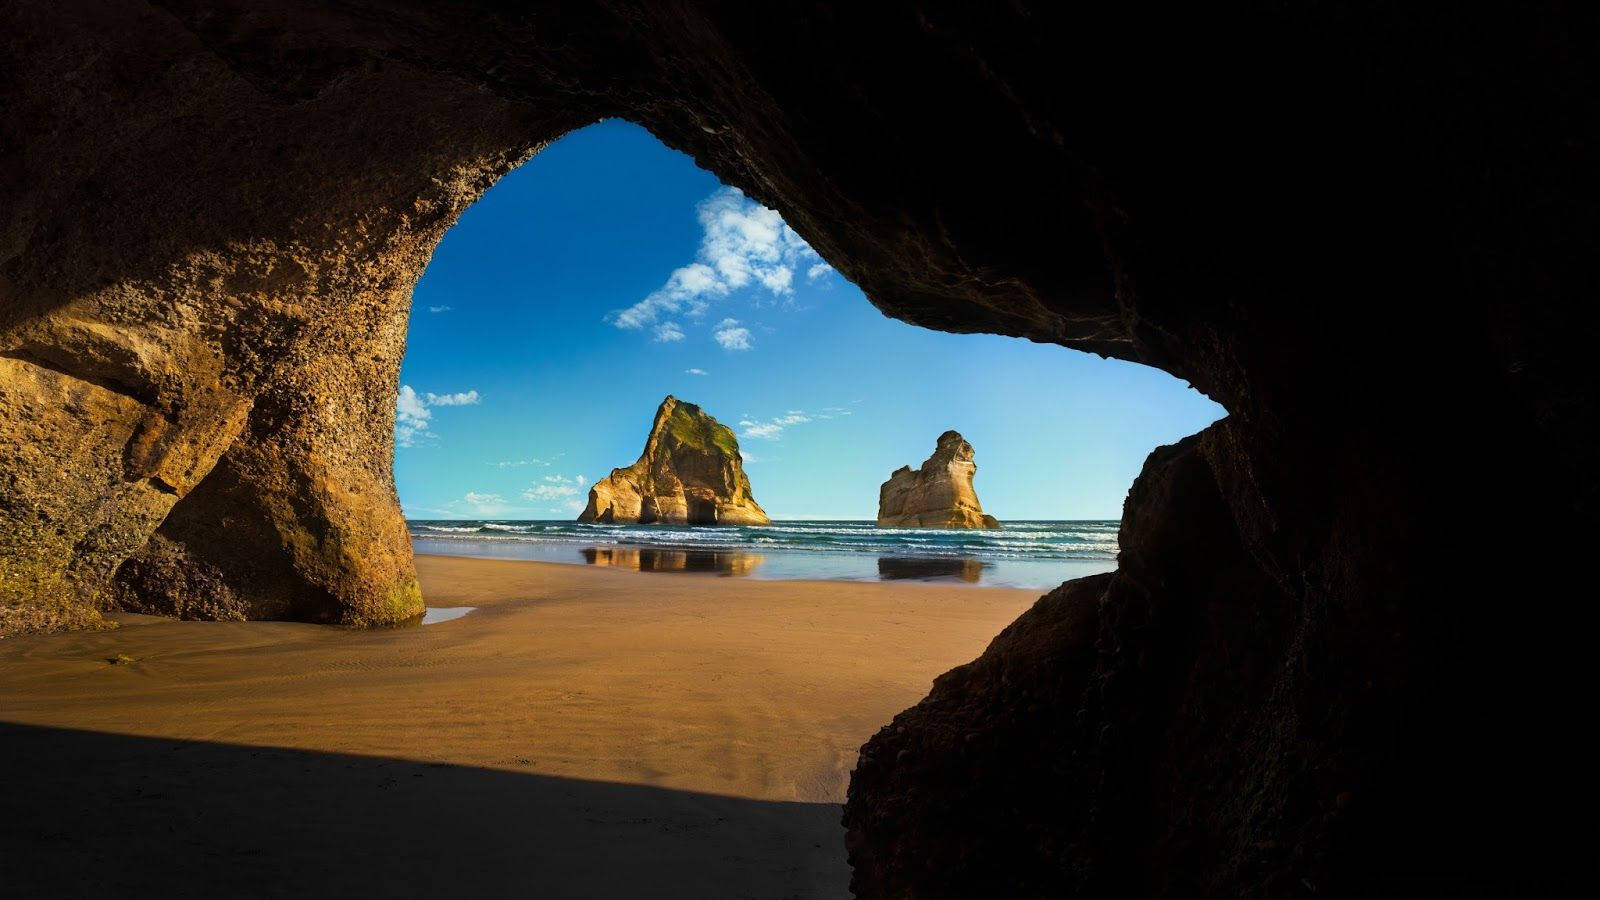 Windows 10 Hd Beach Cave